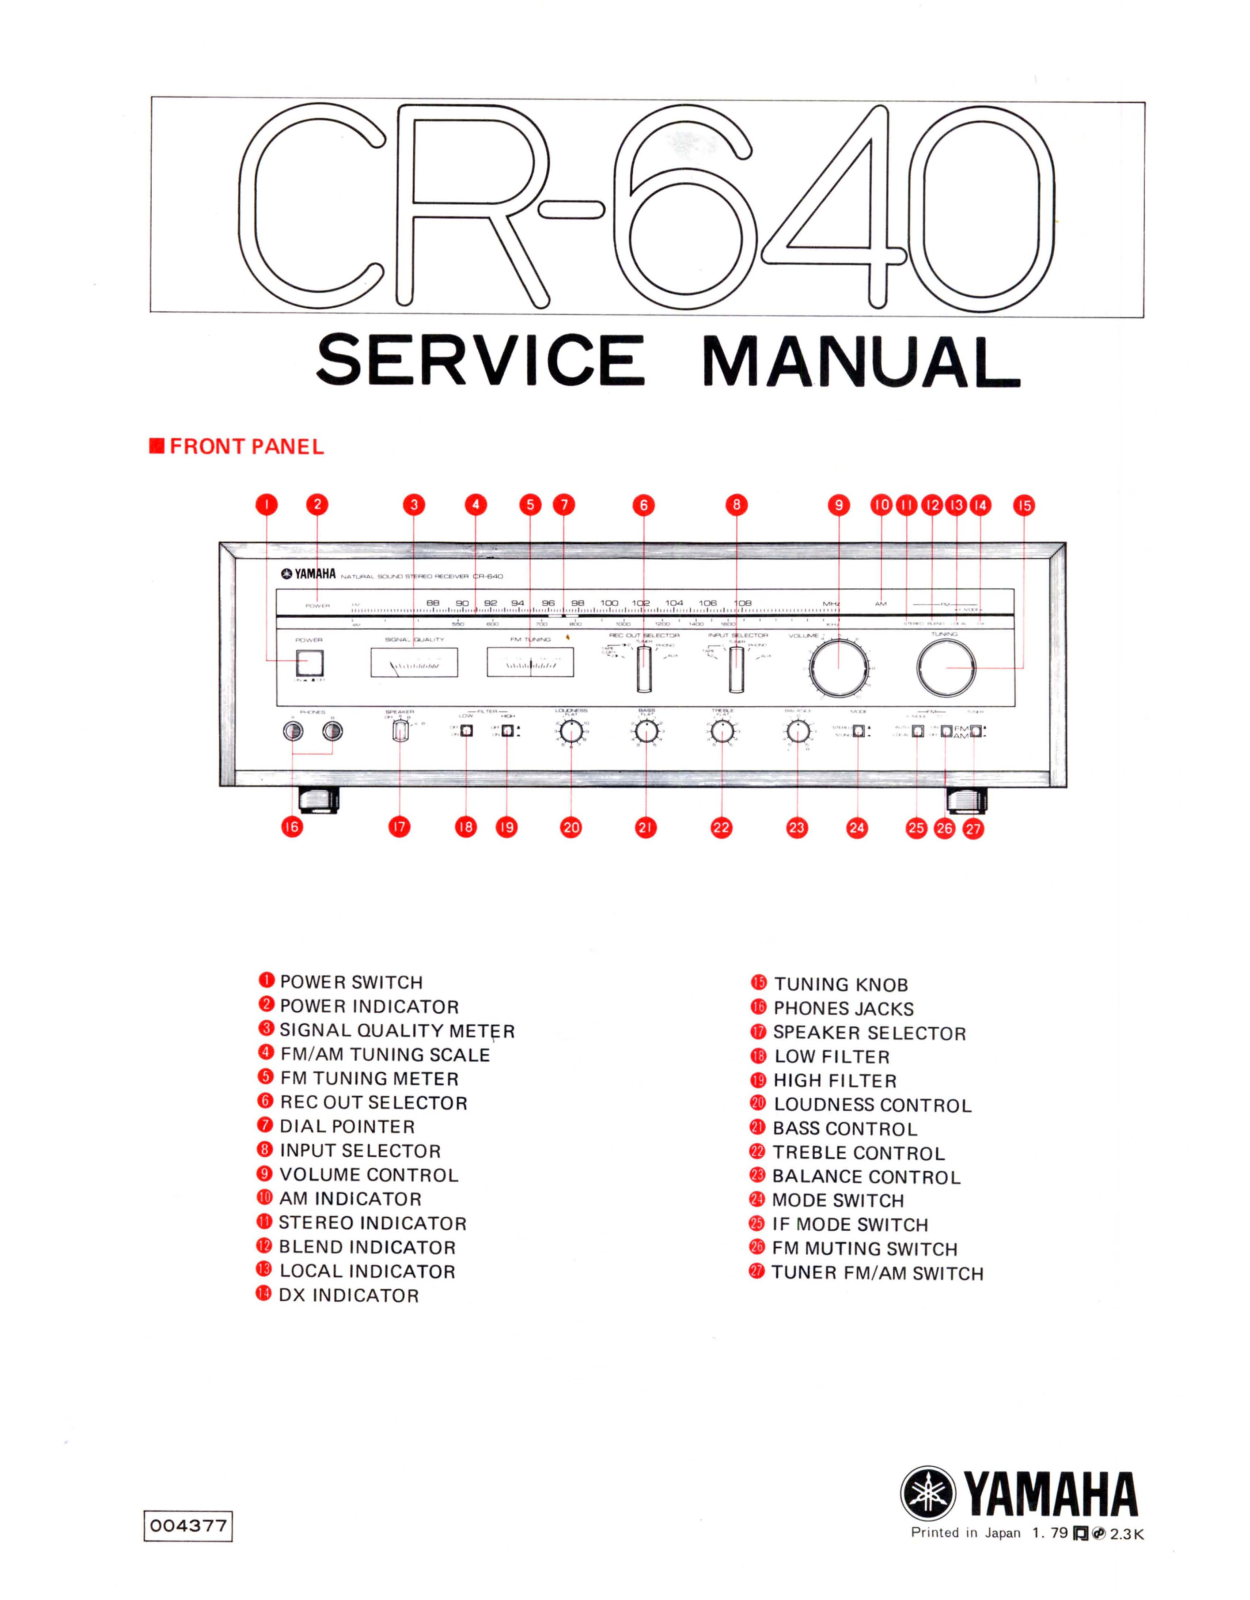 YAMAHA CR 640 Service Manual